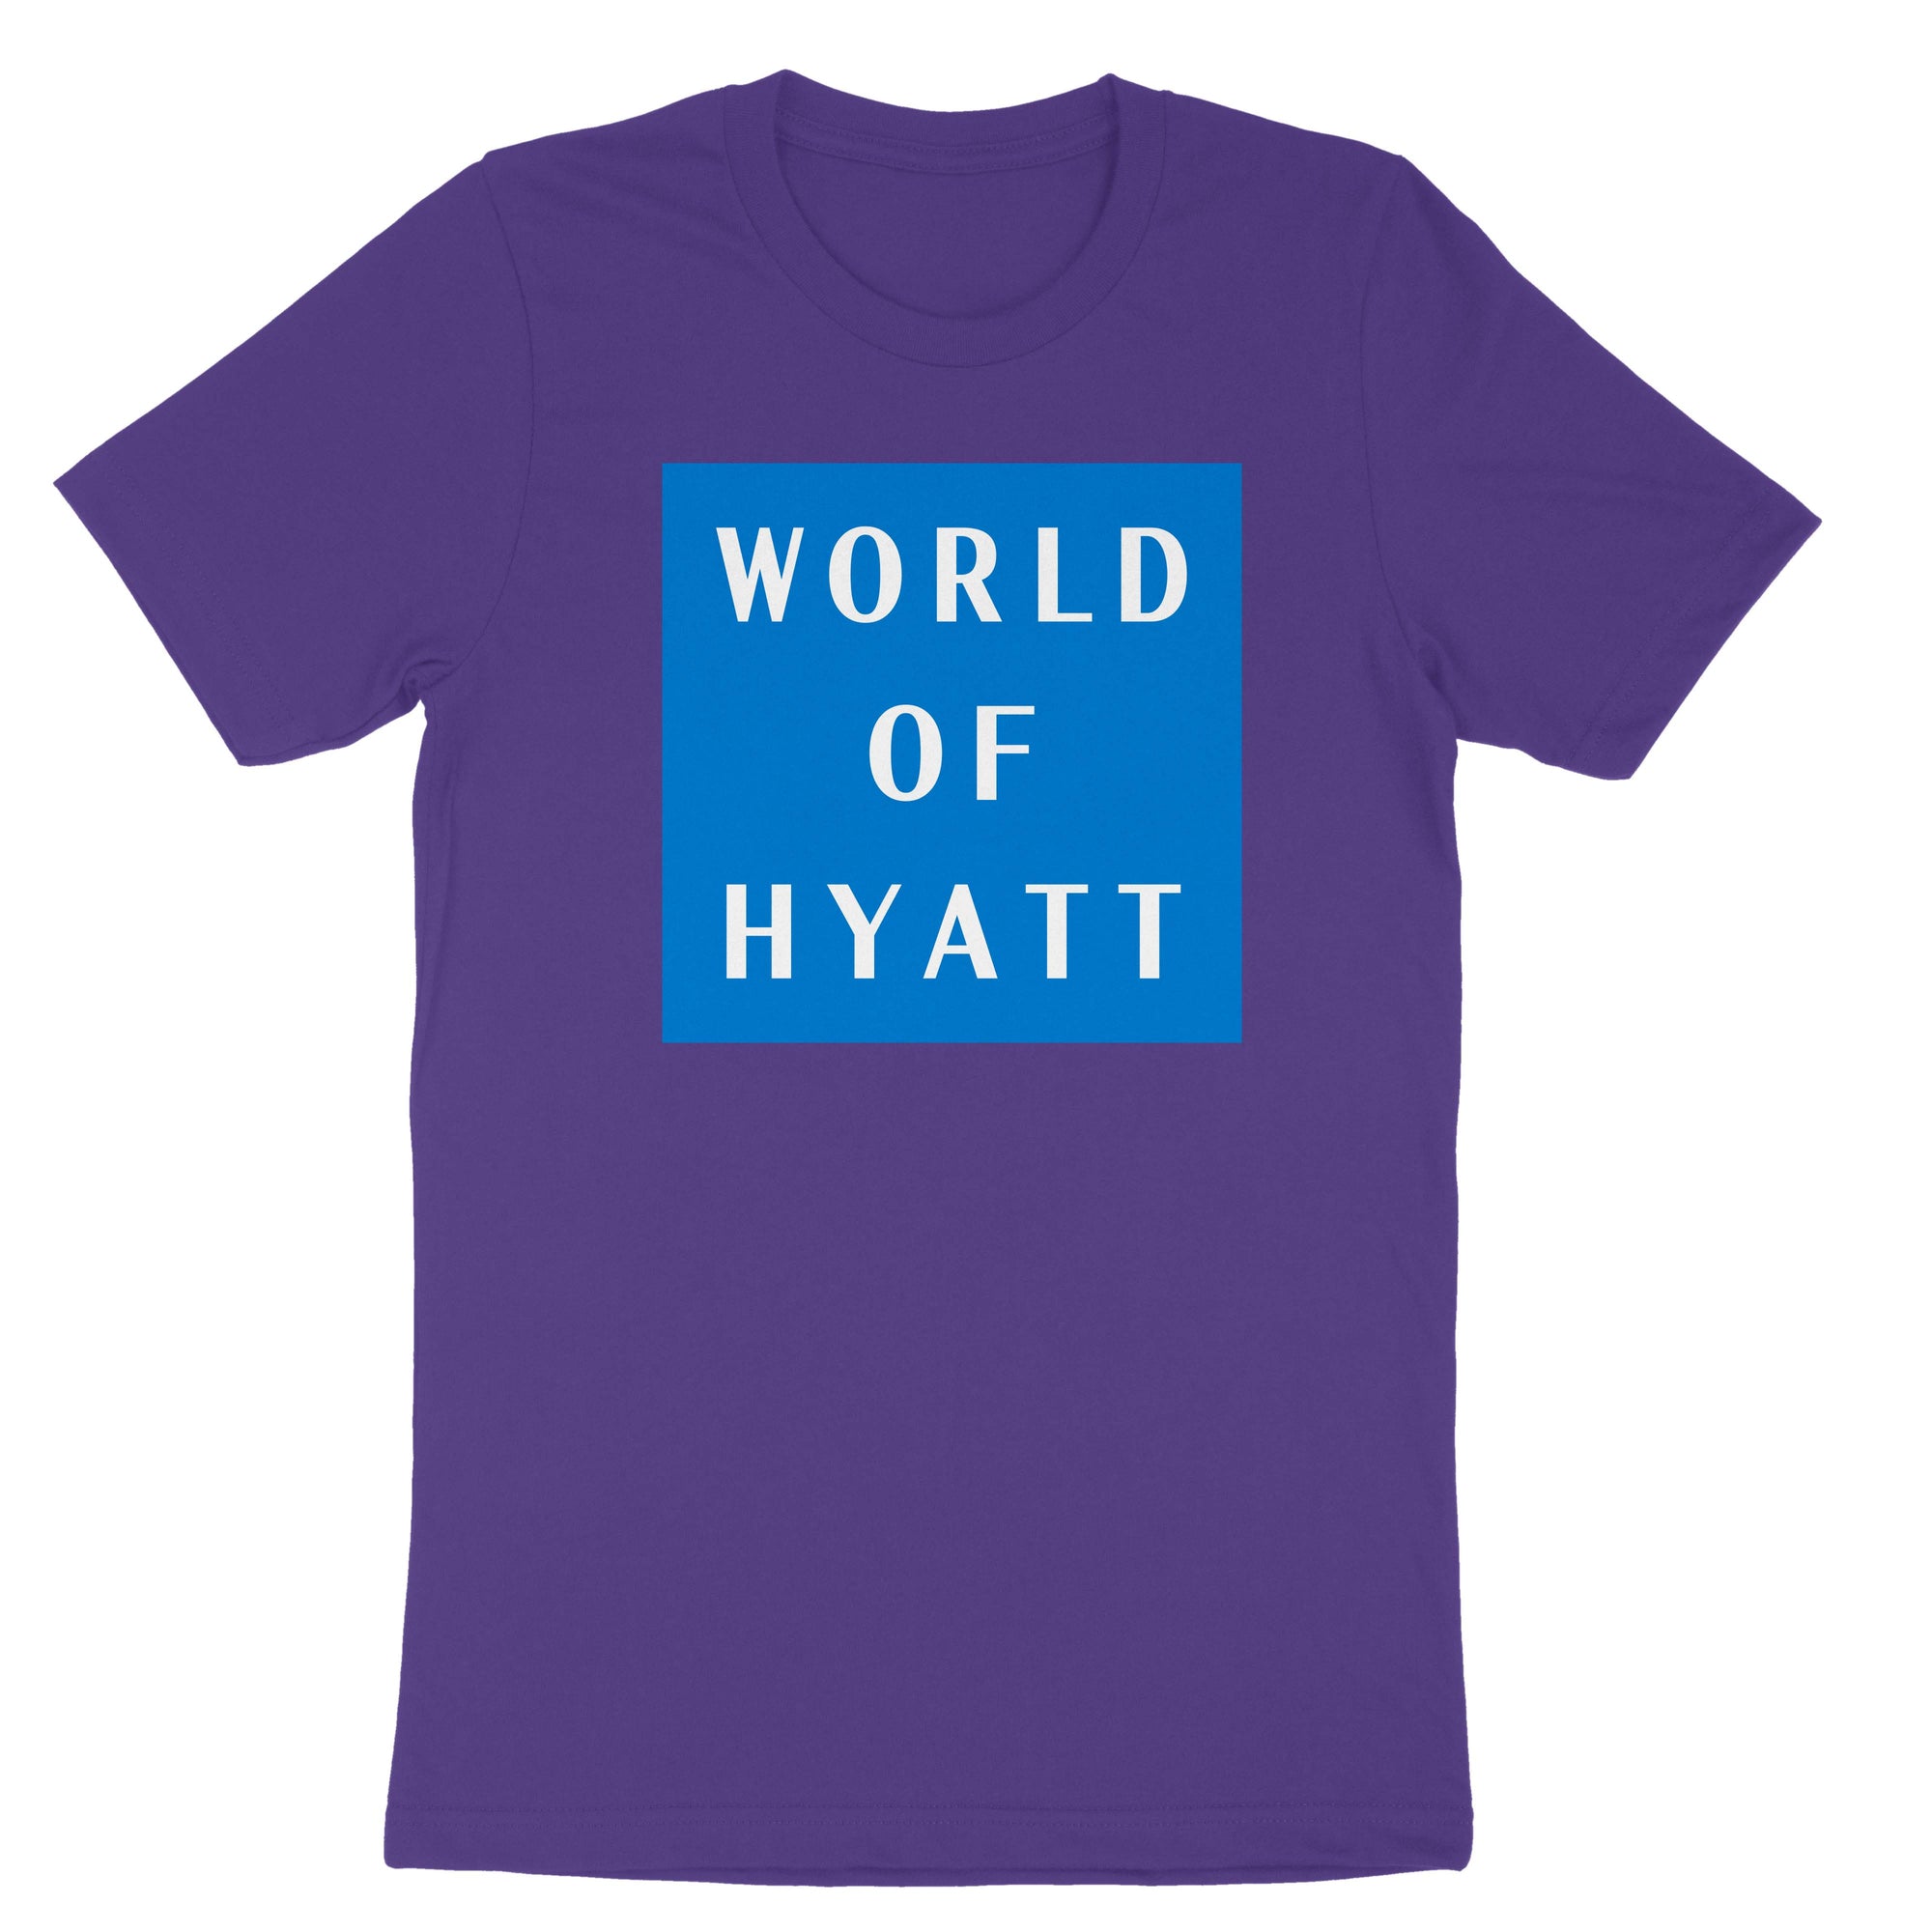 World of Hyatt Volunteer T-Shirt (Hyatt Regency)